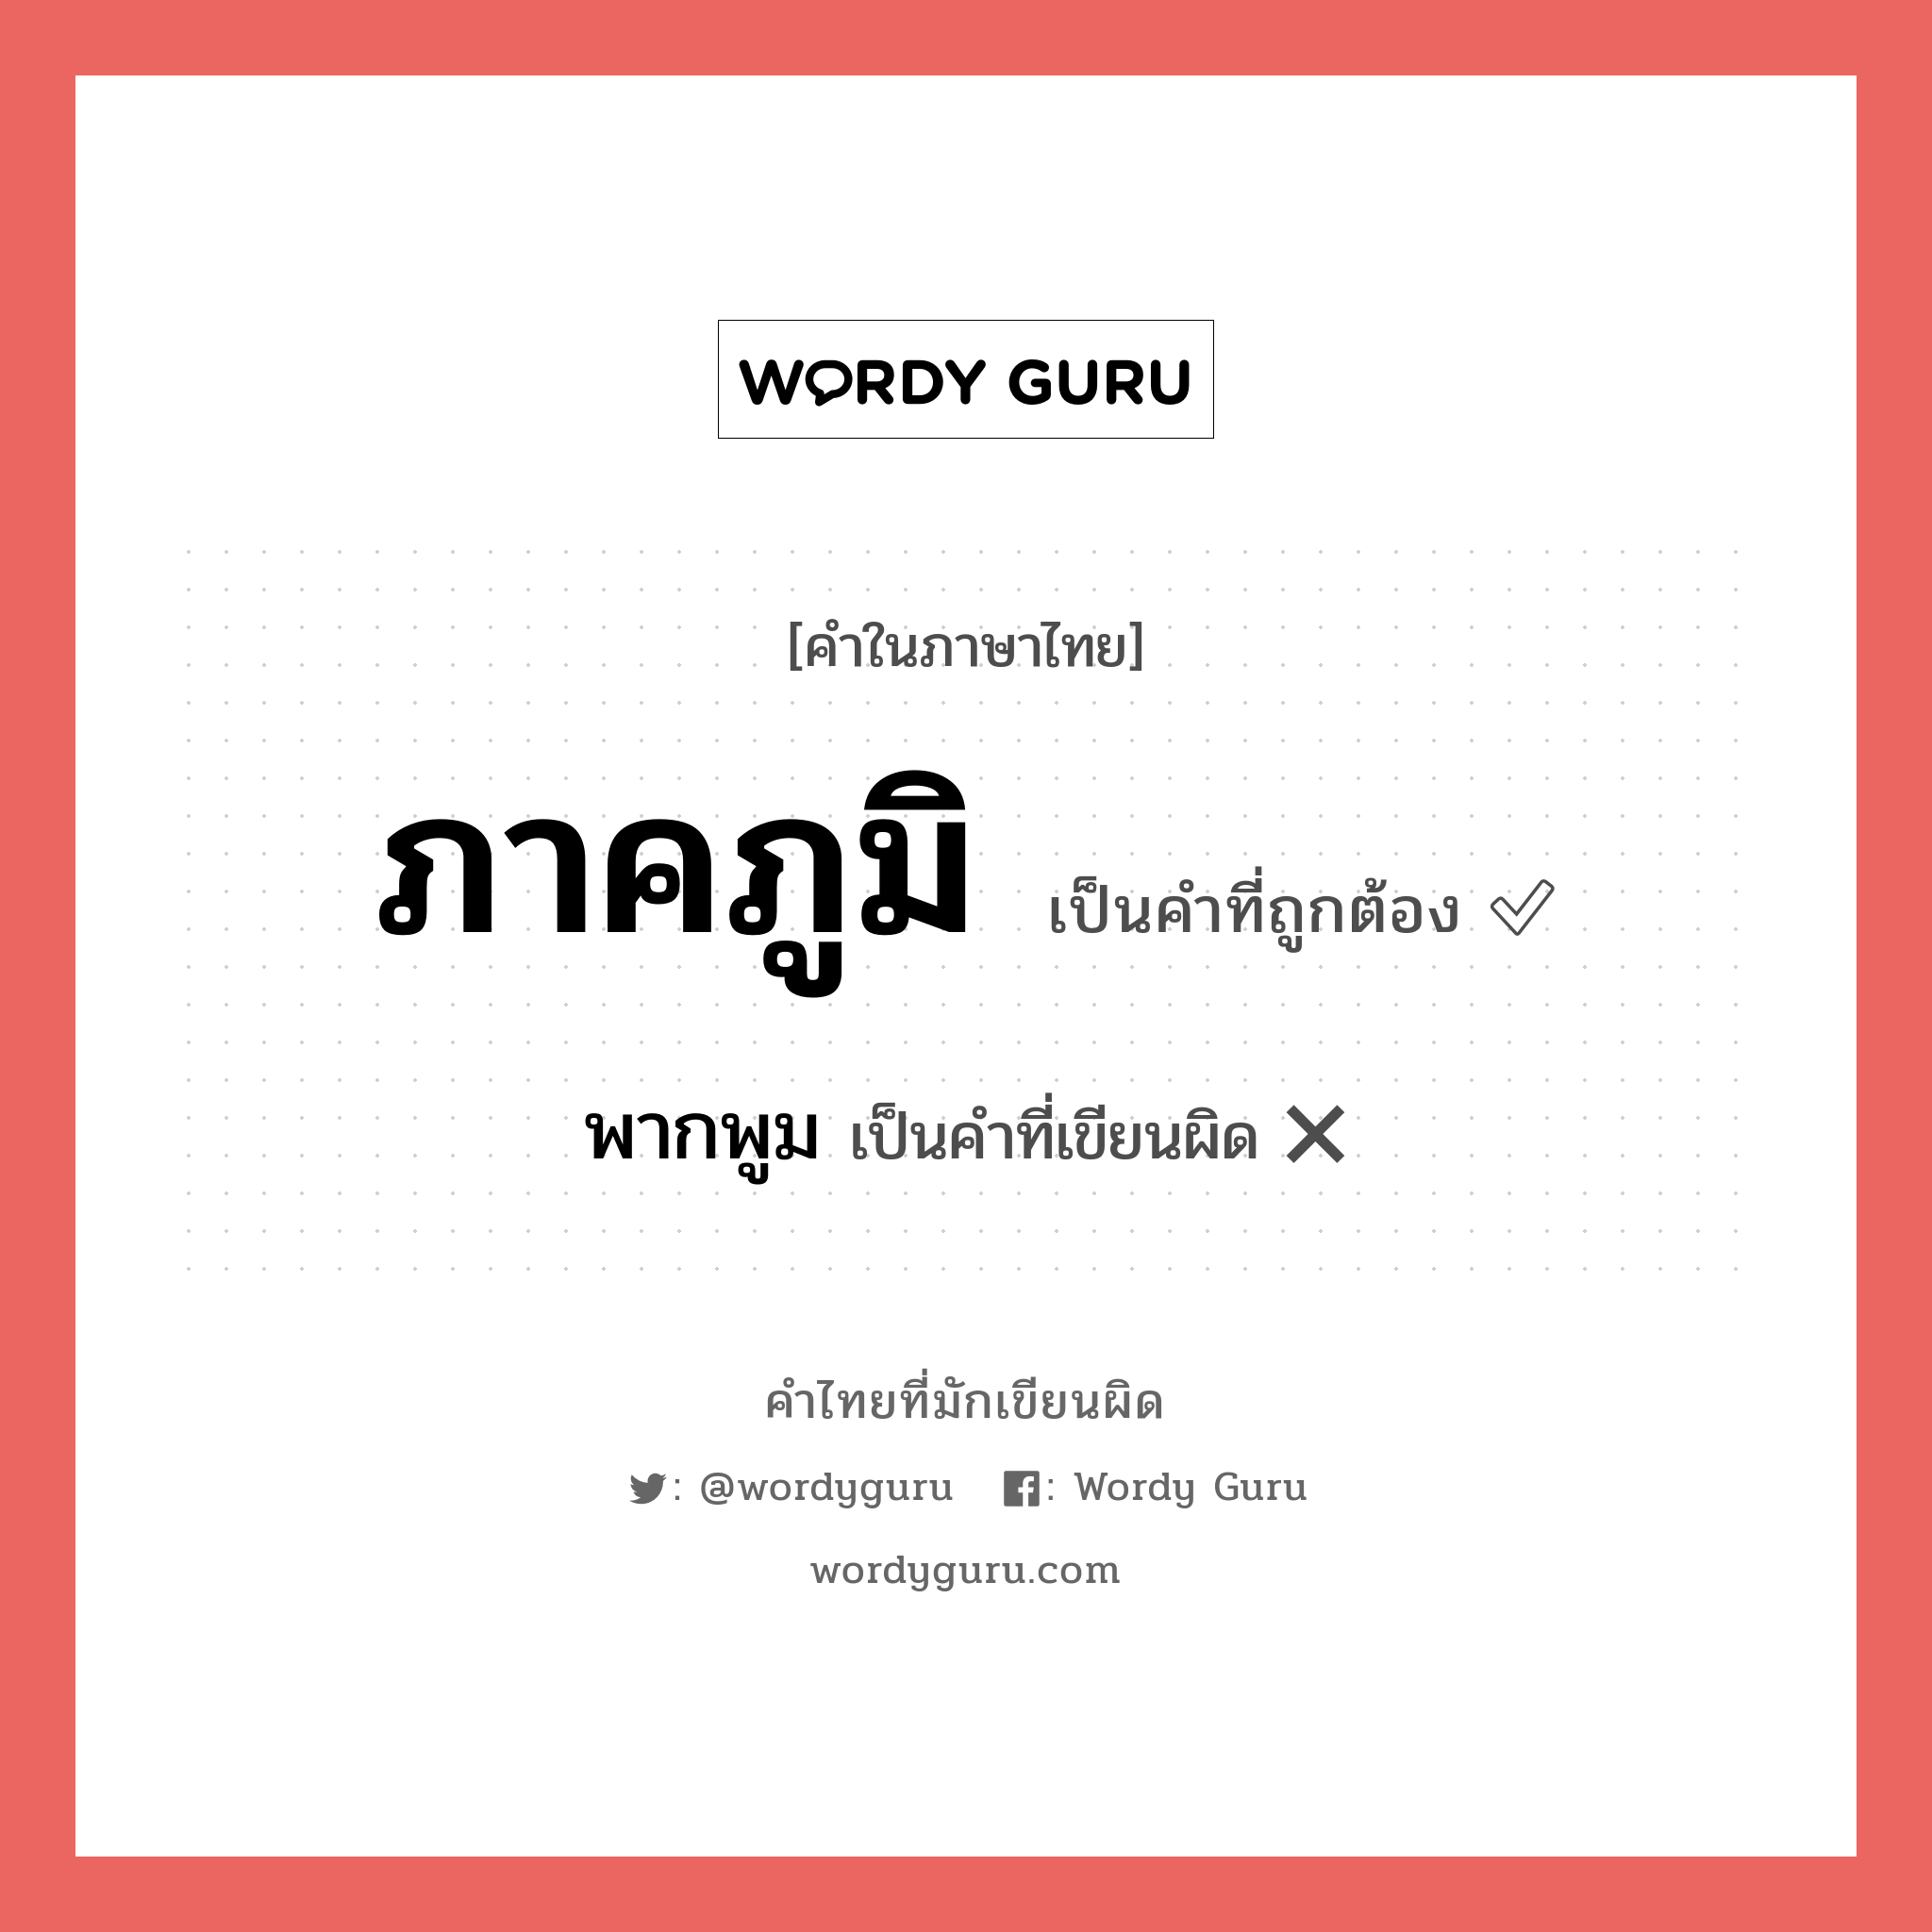 ภาคภูมิ หรือ พากพูม เขียนยังไง? คำไหนเขียนถูก?, คำในภาษาไทยที่มักเขียนผิด ภาคภูมิ คำที่ผิด ❌ พากพูม